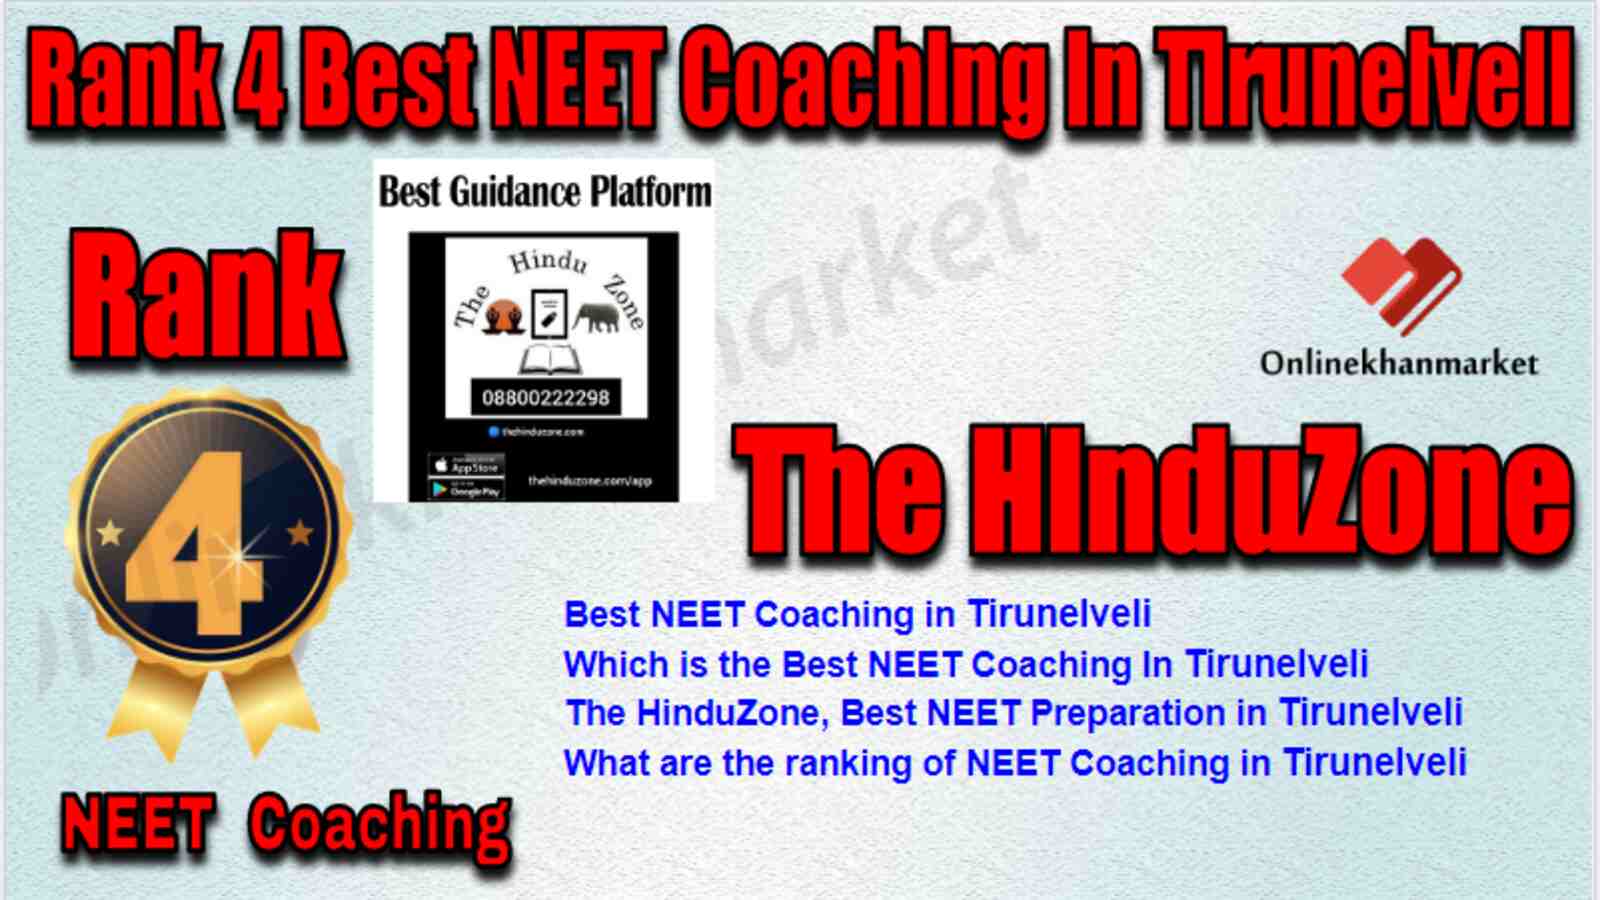 Rank 4 Best NEET Coaching in Tirunelveli